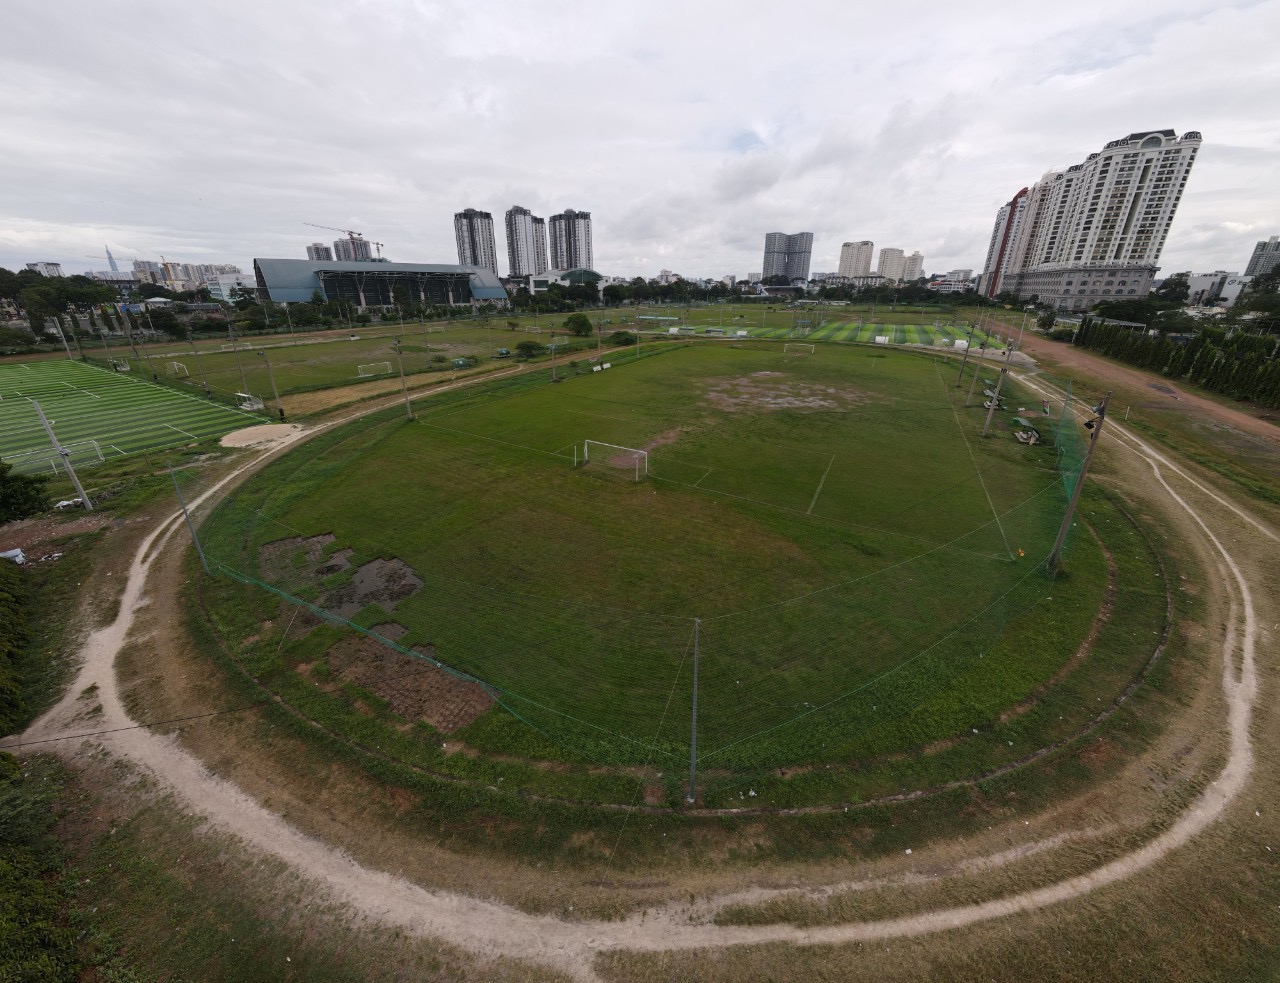 Nằm cạnh Nhà thi đấu Phú Thọ, khu vực Trường đua Phú Thọ (cũ) được xây dựng từ năm 1932 với diện tích hơn 44 ha (đã đóng cửa theo quyết định của UBND TP.HCM vào năm 2011) cũng rơi vào tình trạng nhếch nhác. Khu vực này giờ này là sân bóng cỏ tự nhiên và nhân tạo đang được đơn vị quản lý cho thuê.